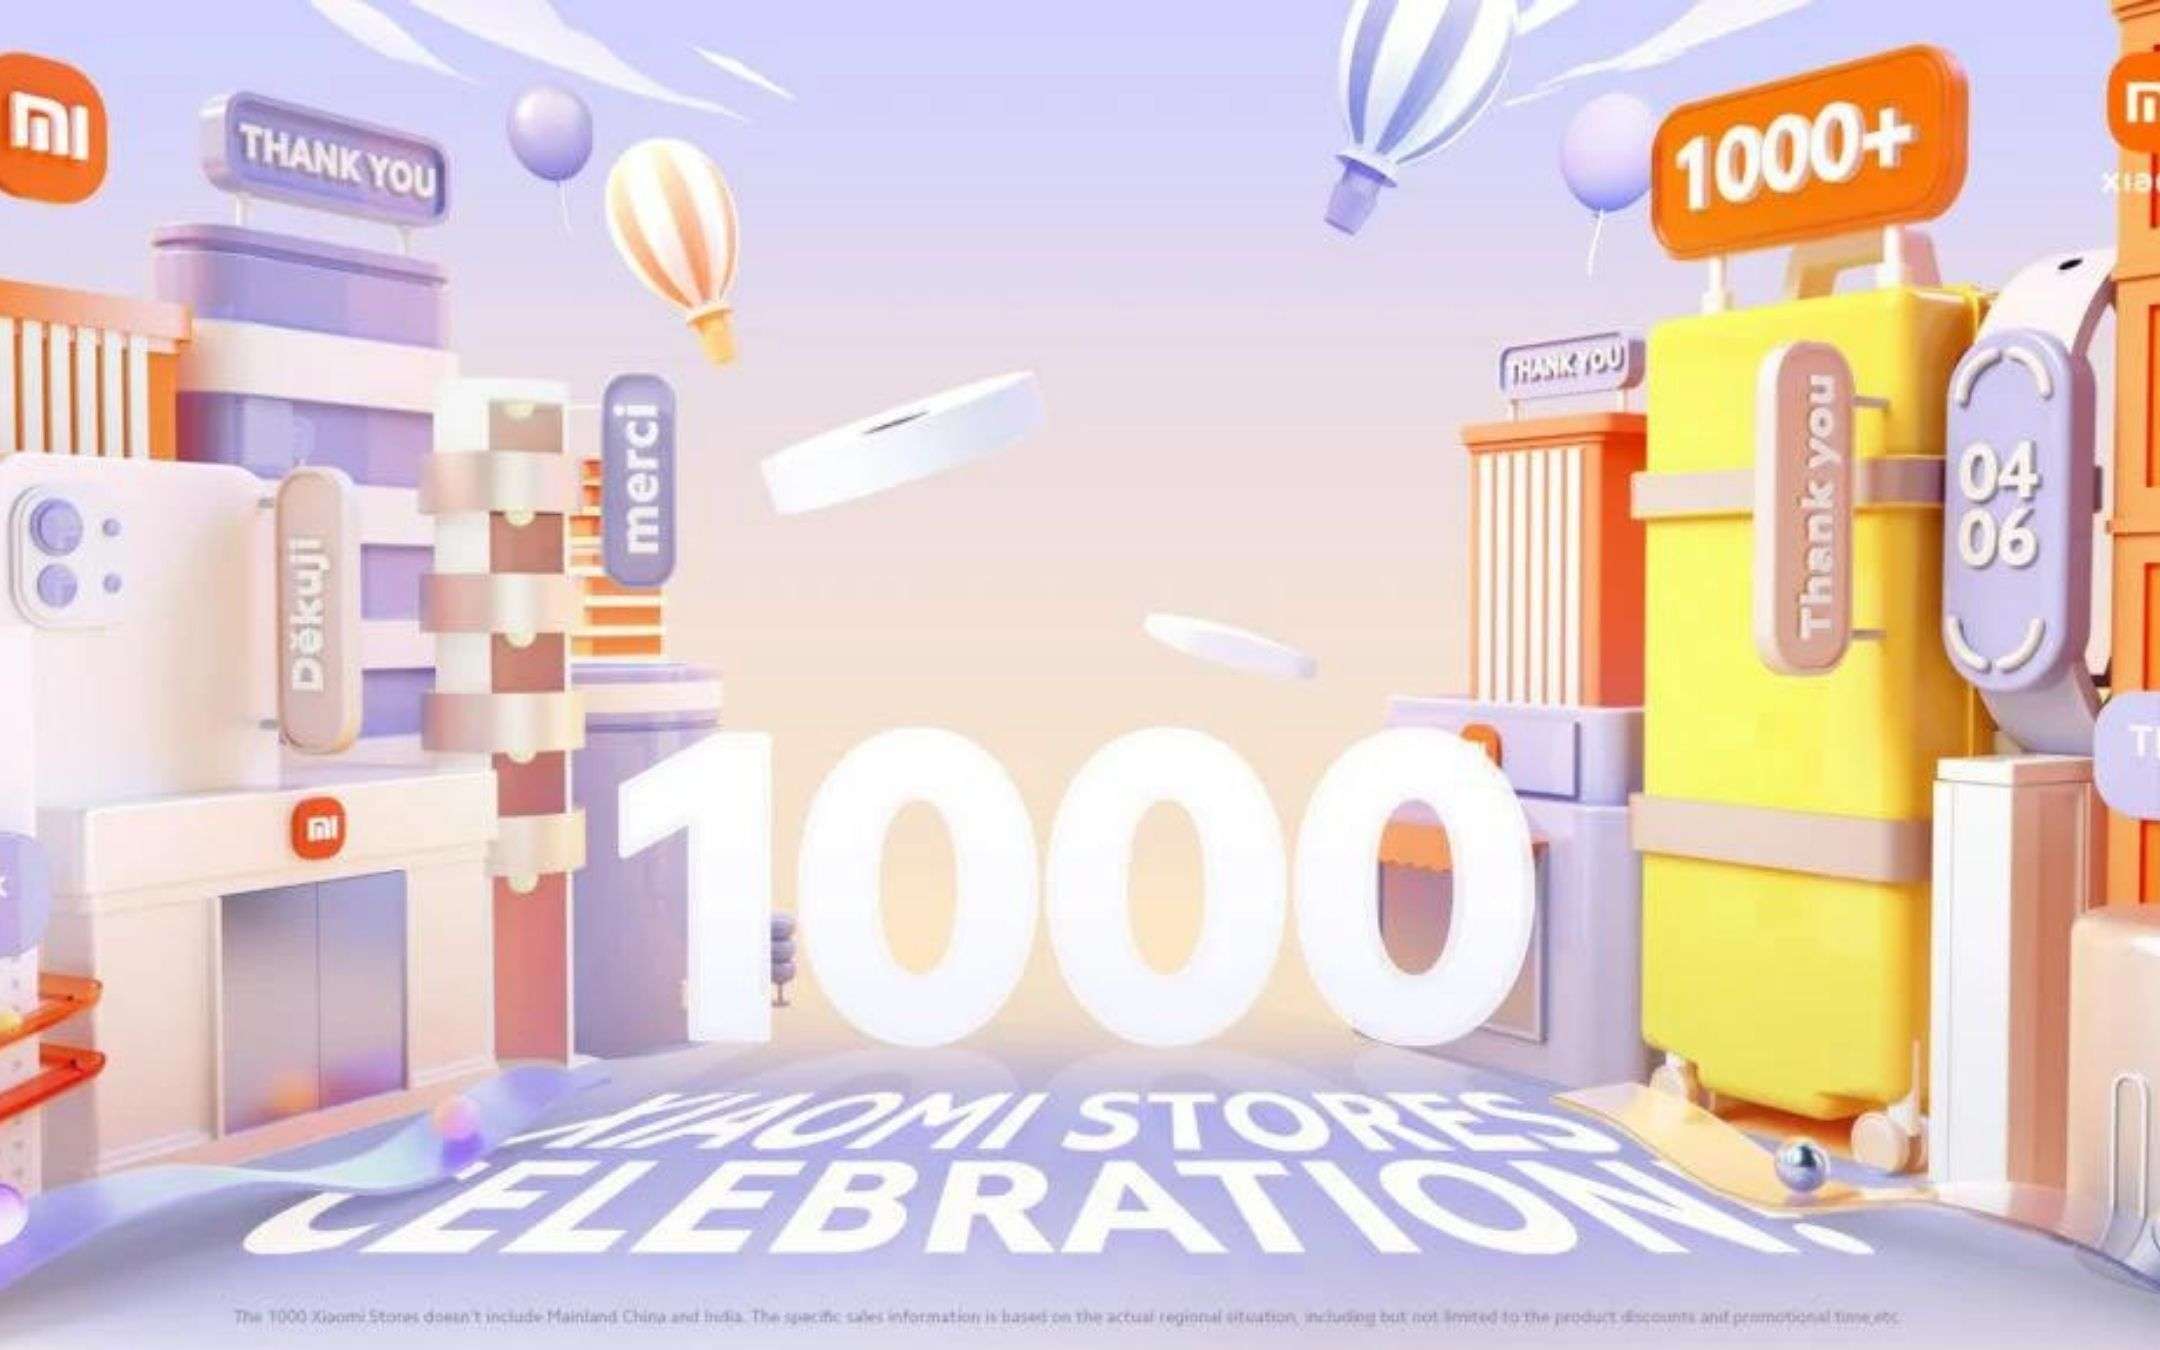 Xiaomi: 1000 Mi Store presenti in TUTTO il mondo